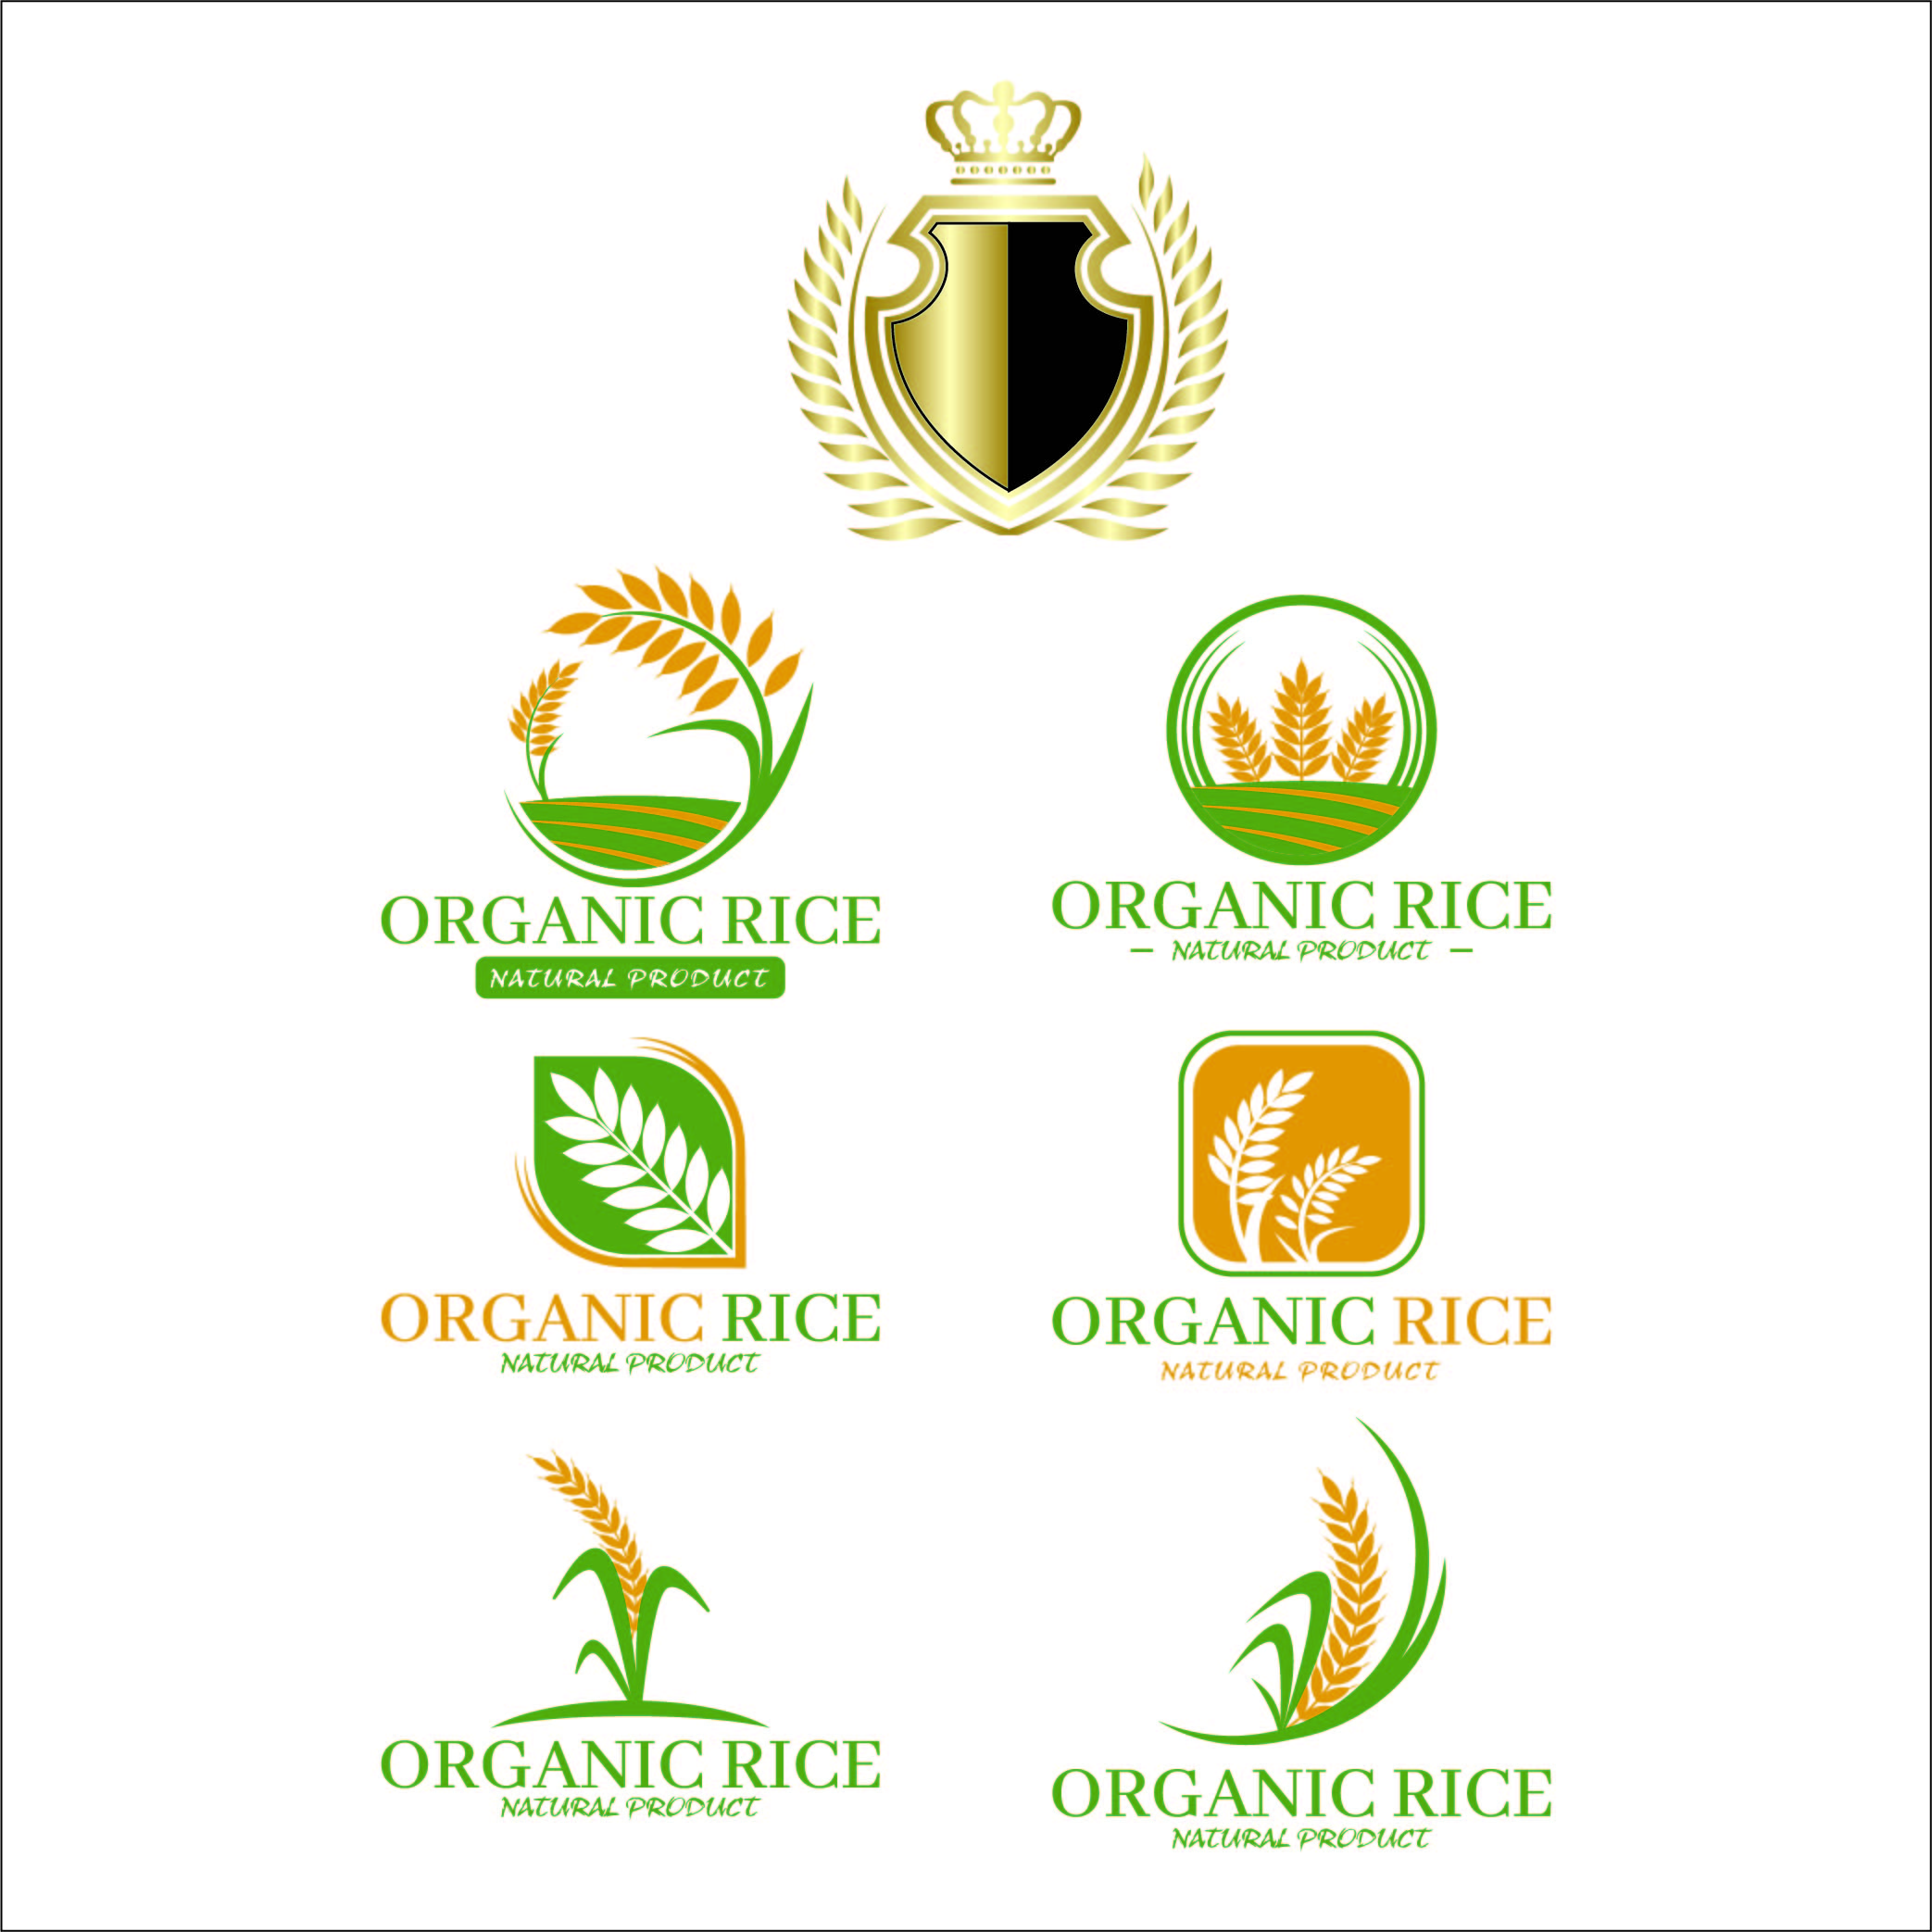 Oraganic Rice Logo Design cover image.